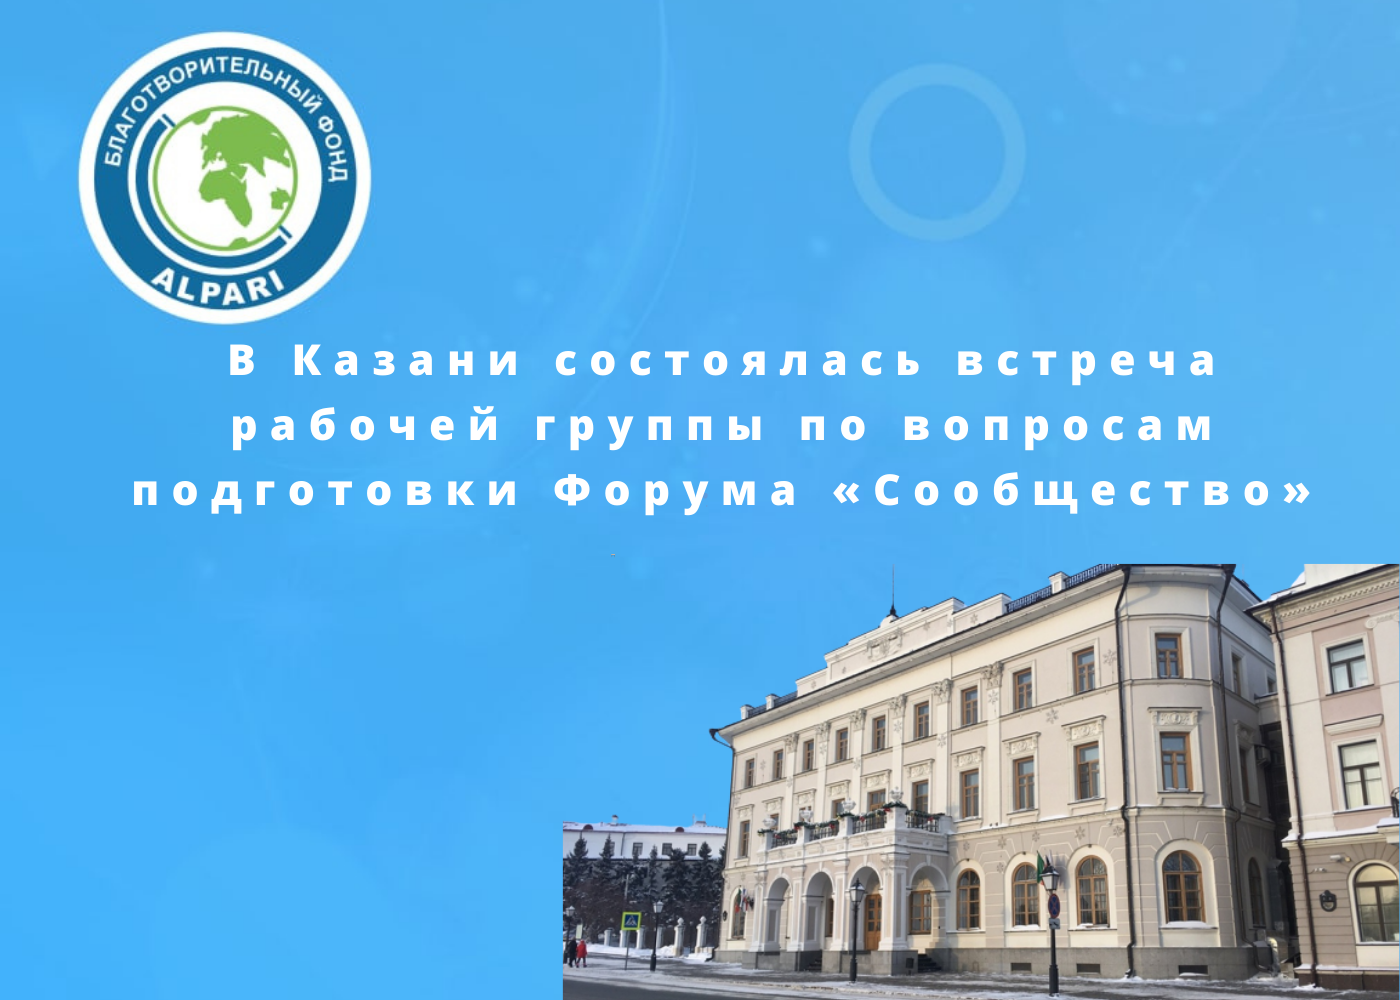 В Казани состоялась встреча рабочей группы по вопросам подготовки Форума «Сообщество»